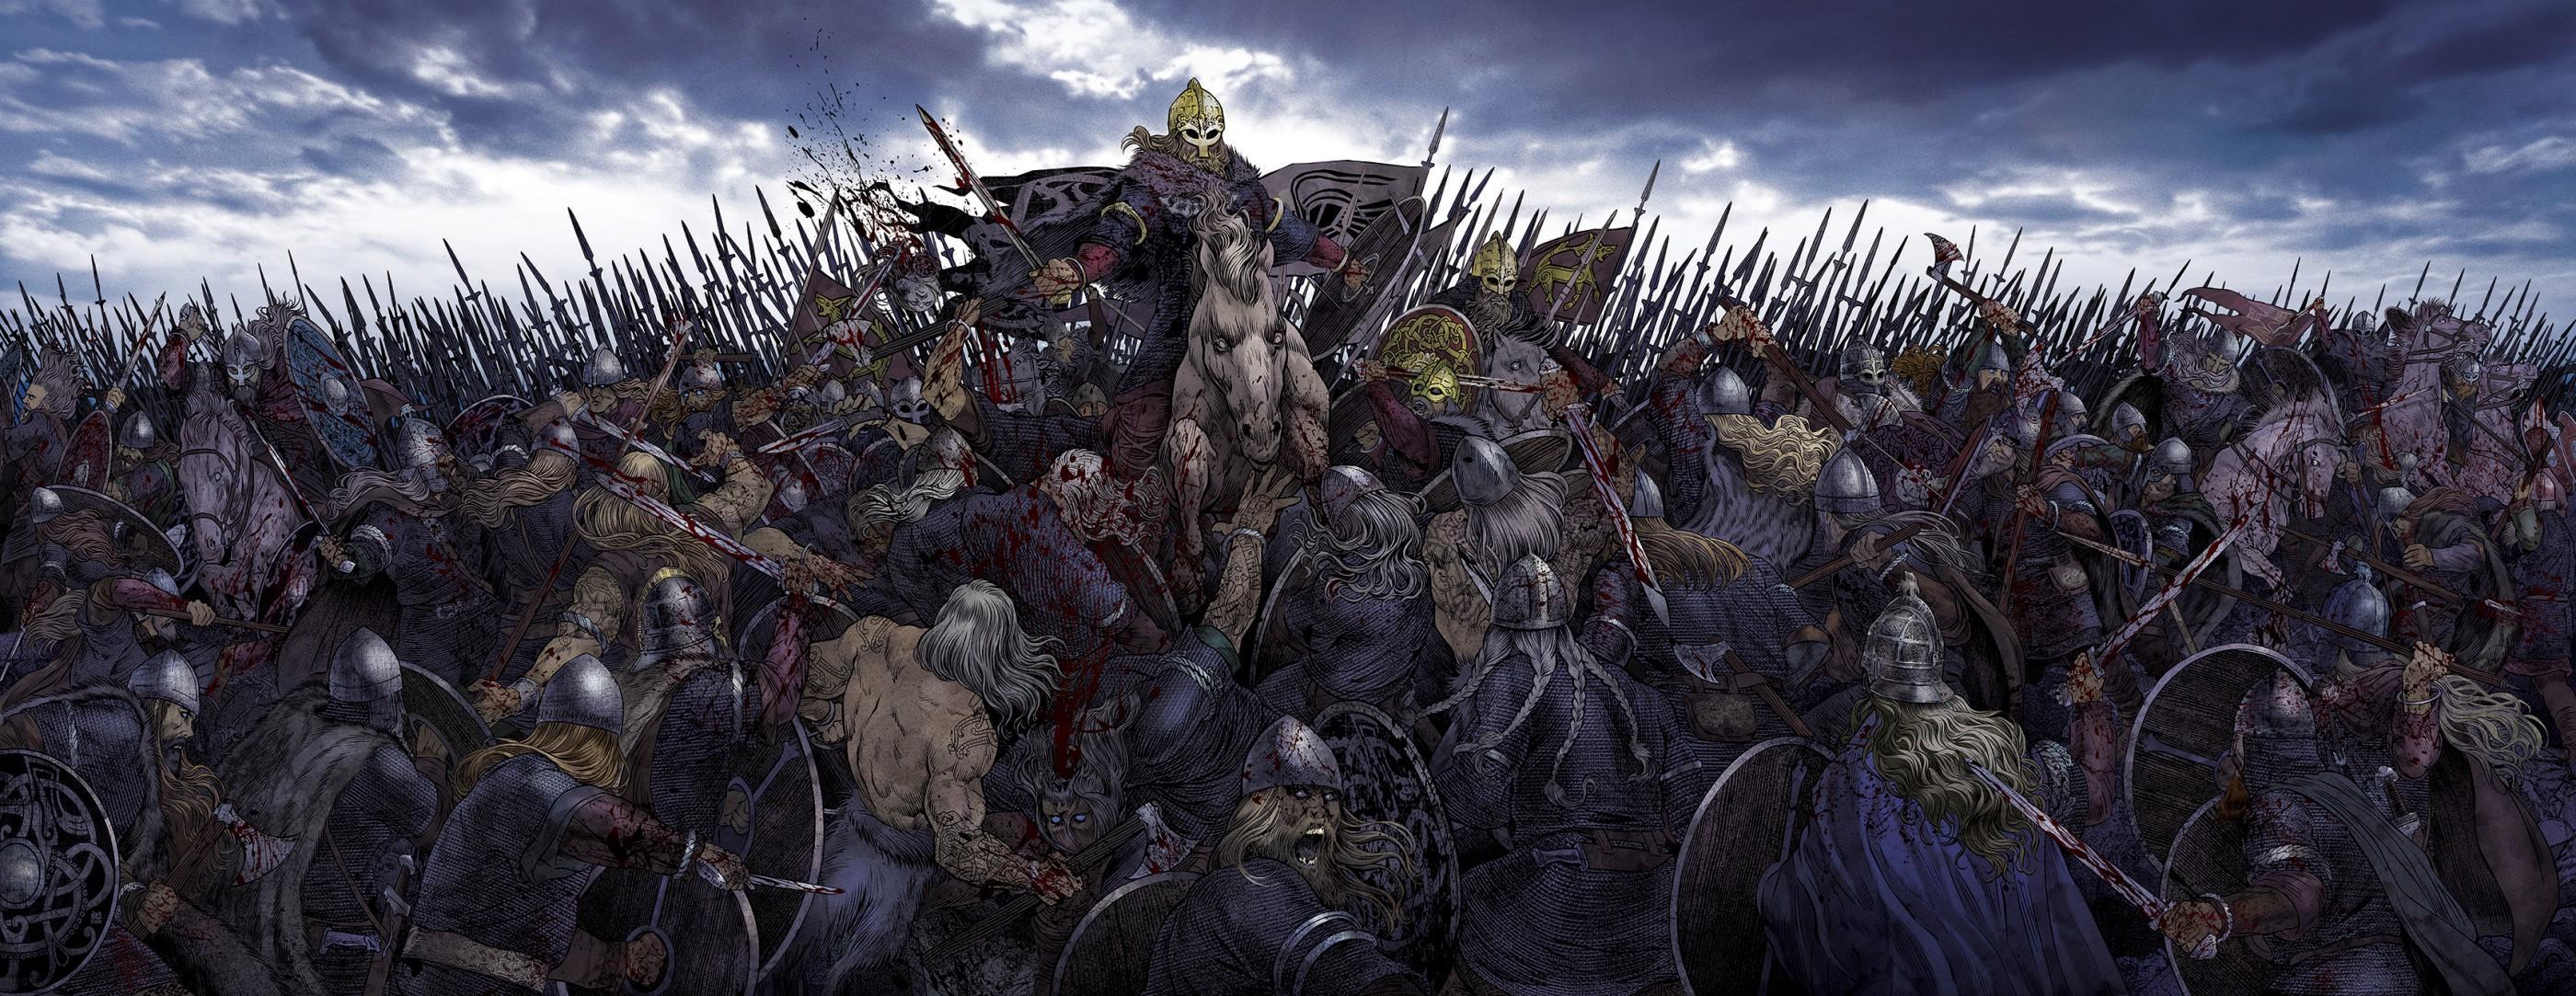 Атакуйте пала. Великая языческая армия викингов. Скандинавия Викинги битвы. Эйнхерии (Einherjar). Йомсвикинги сага.